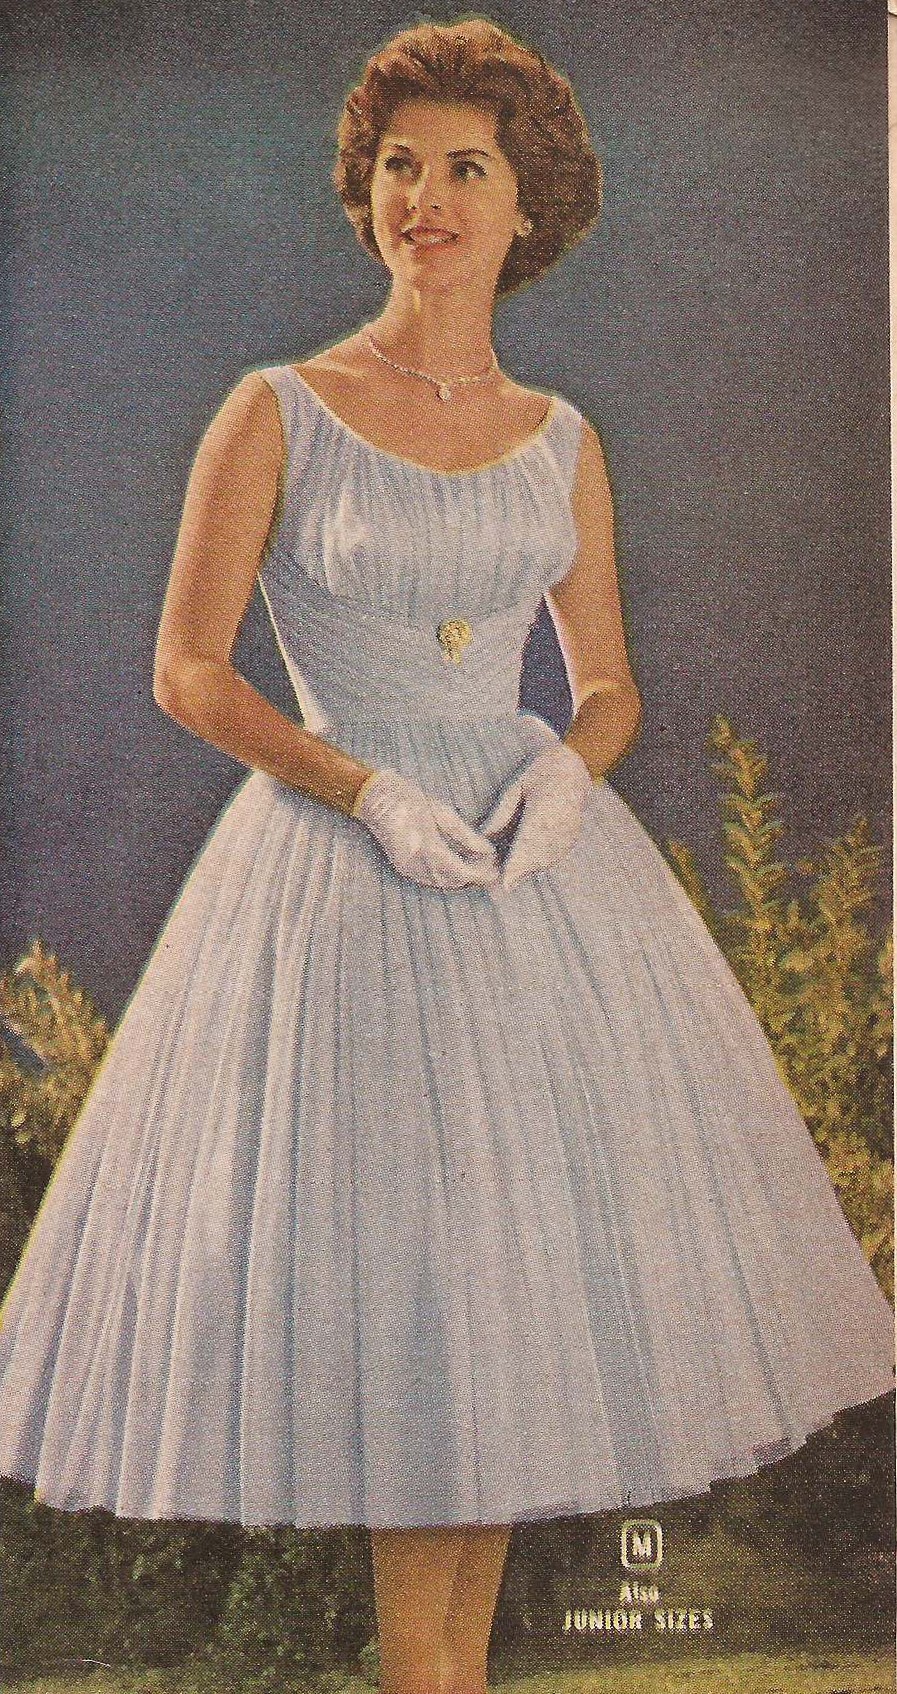 1960 party dresses